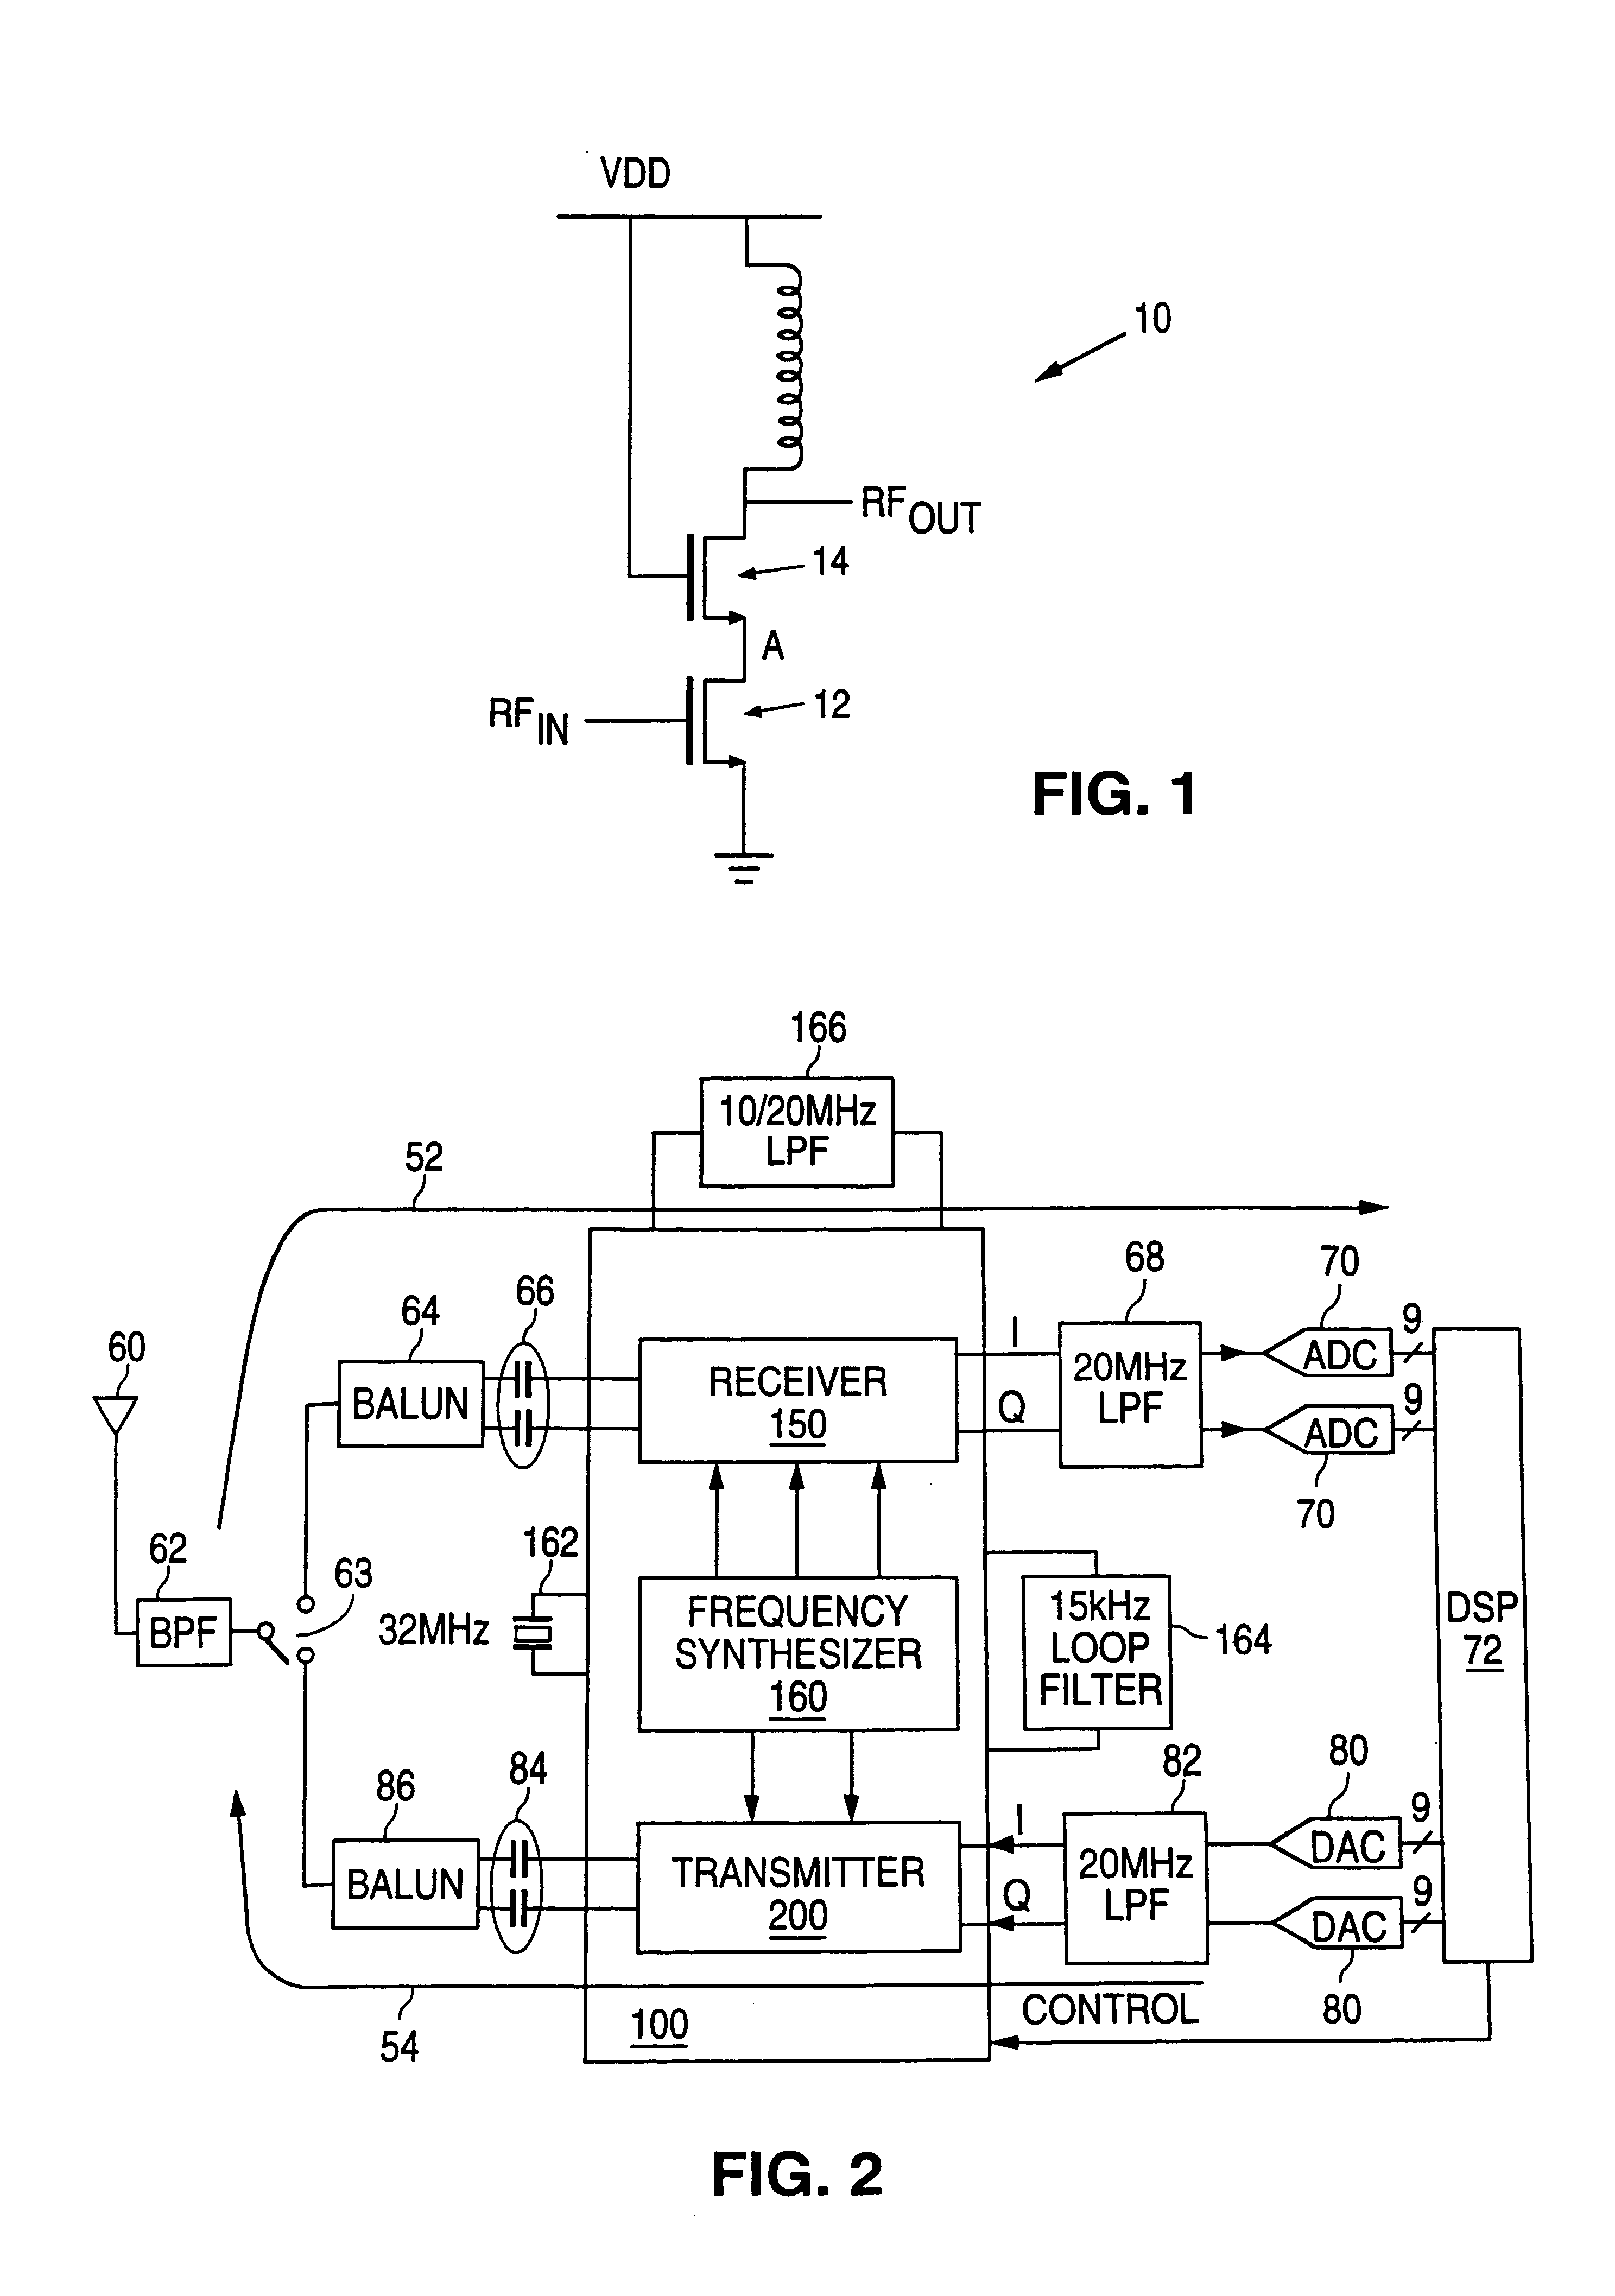 CMOS transceiver having an integrated power amplifier